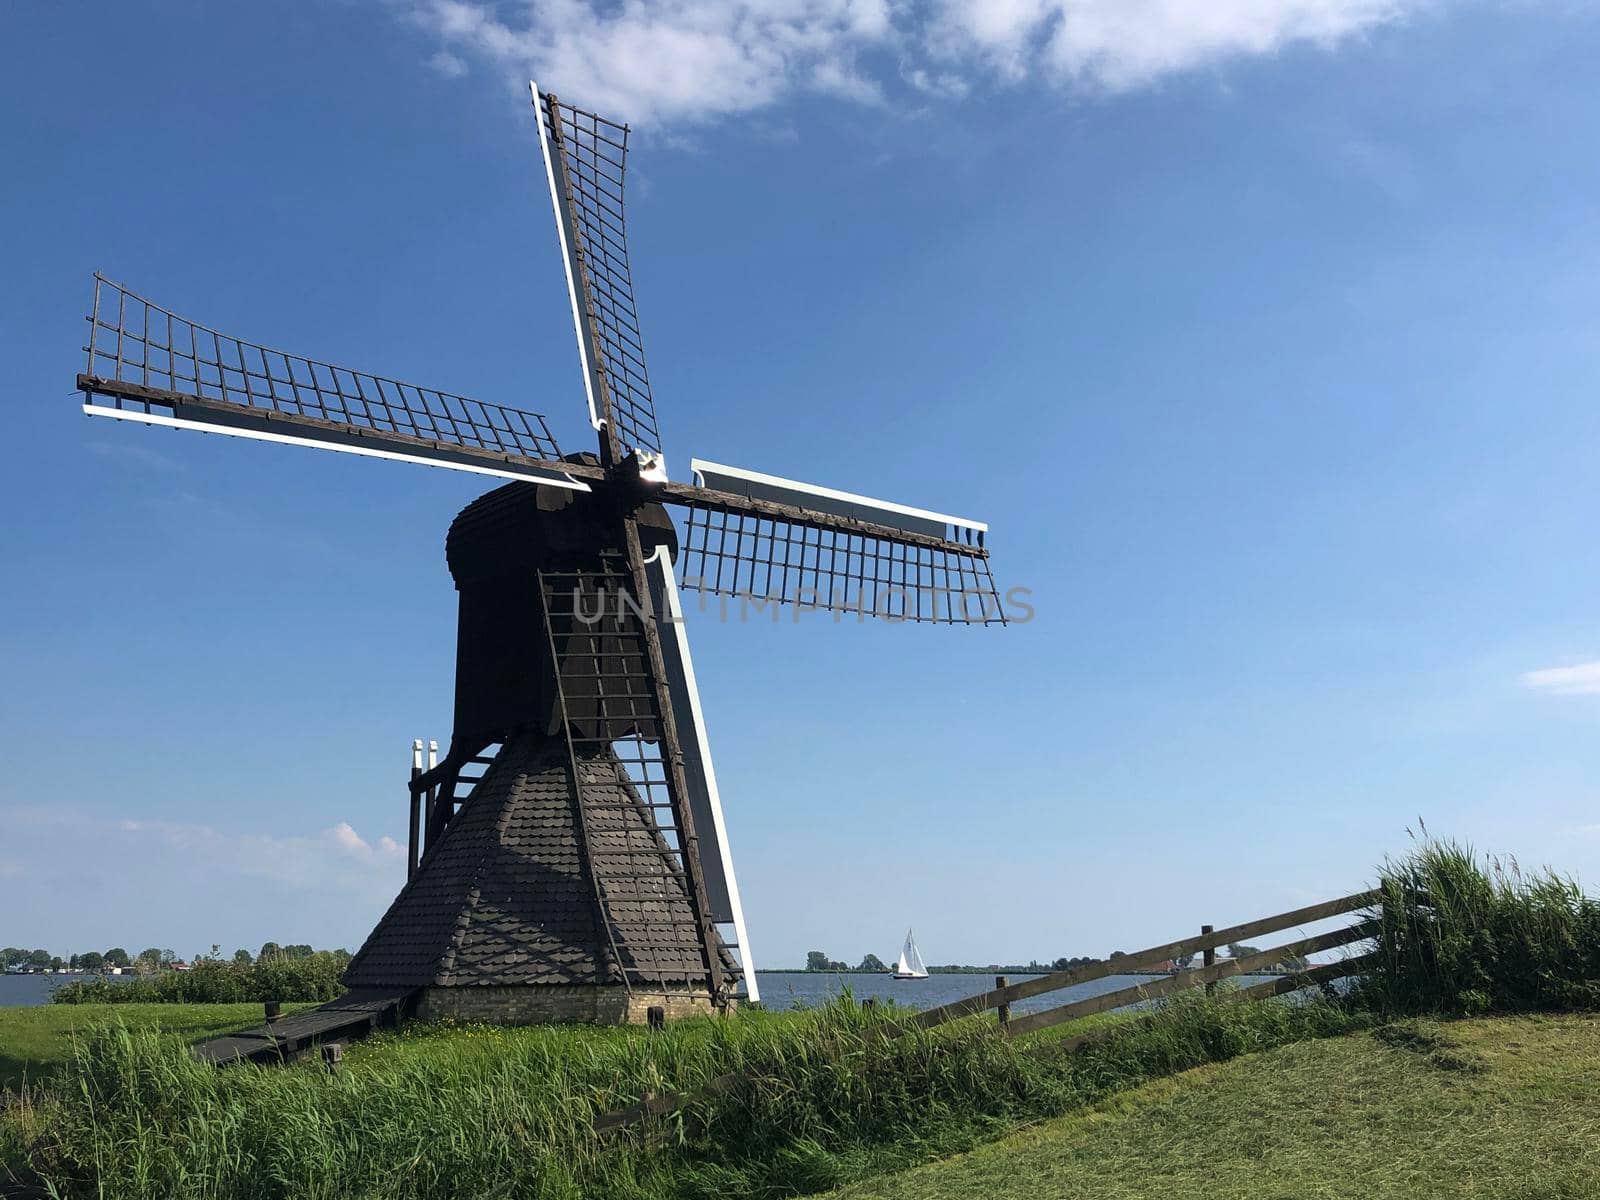 Windmill doris mooltsje near the village of Oudega, Friesland, Netherlands.